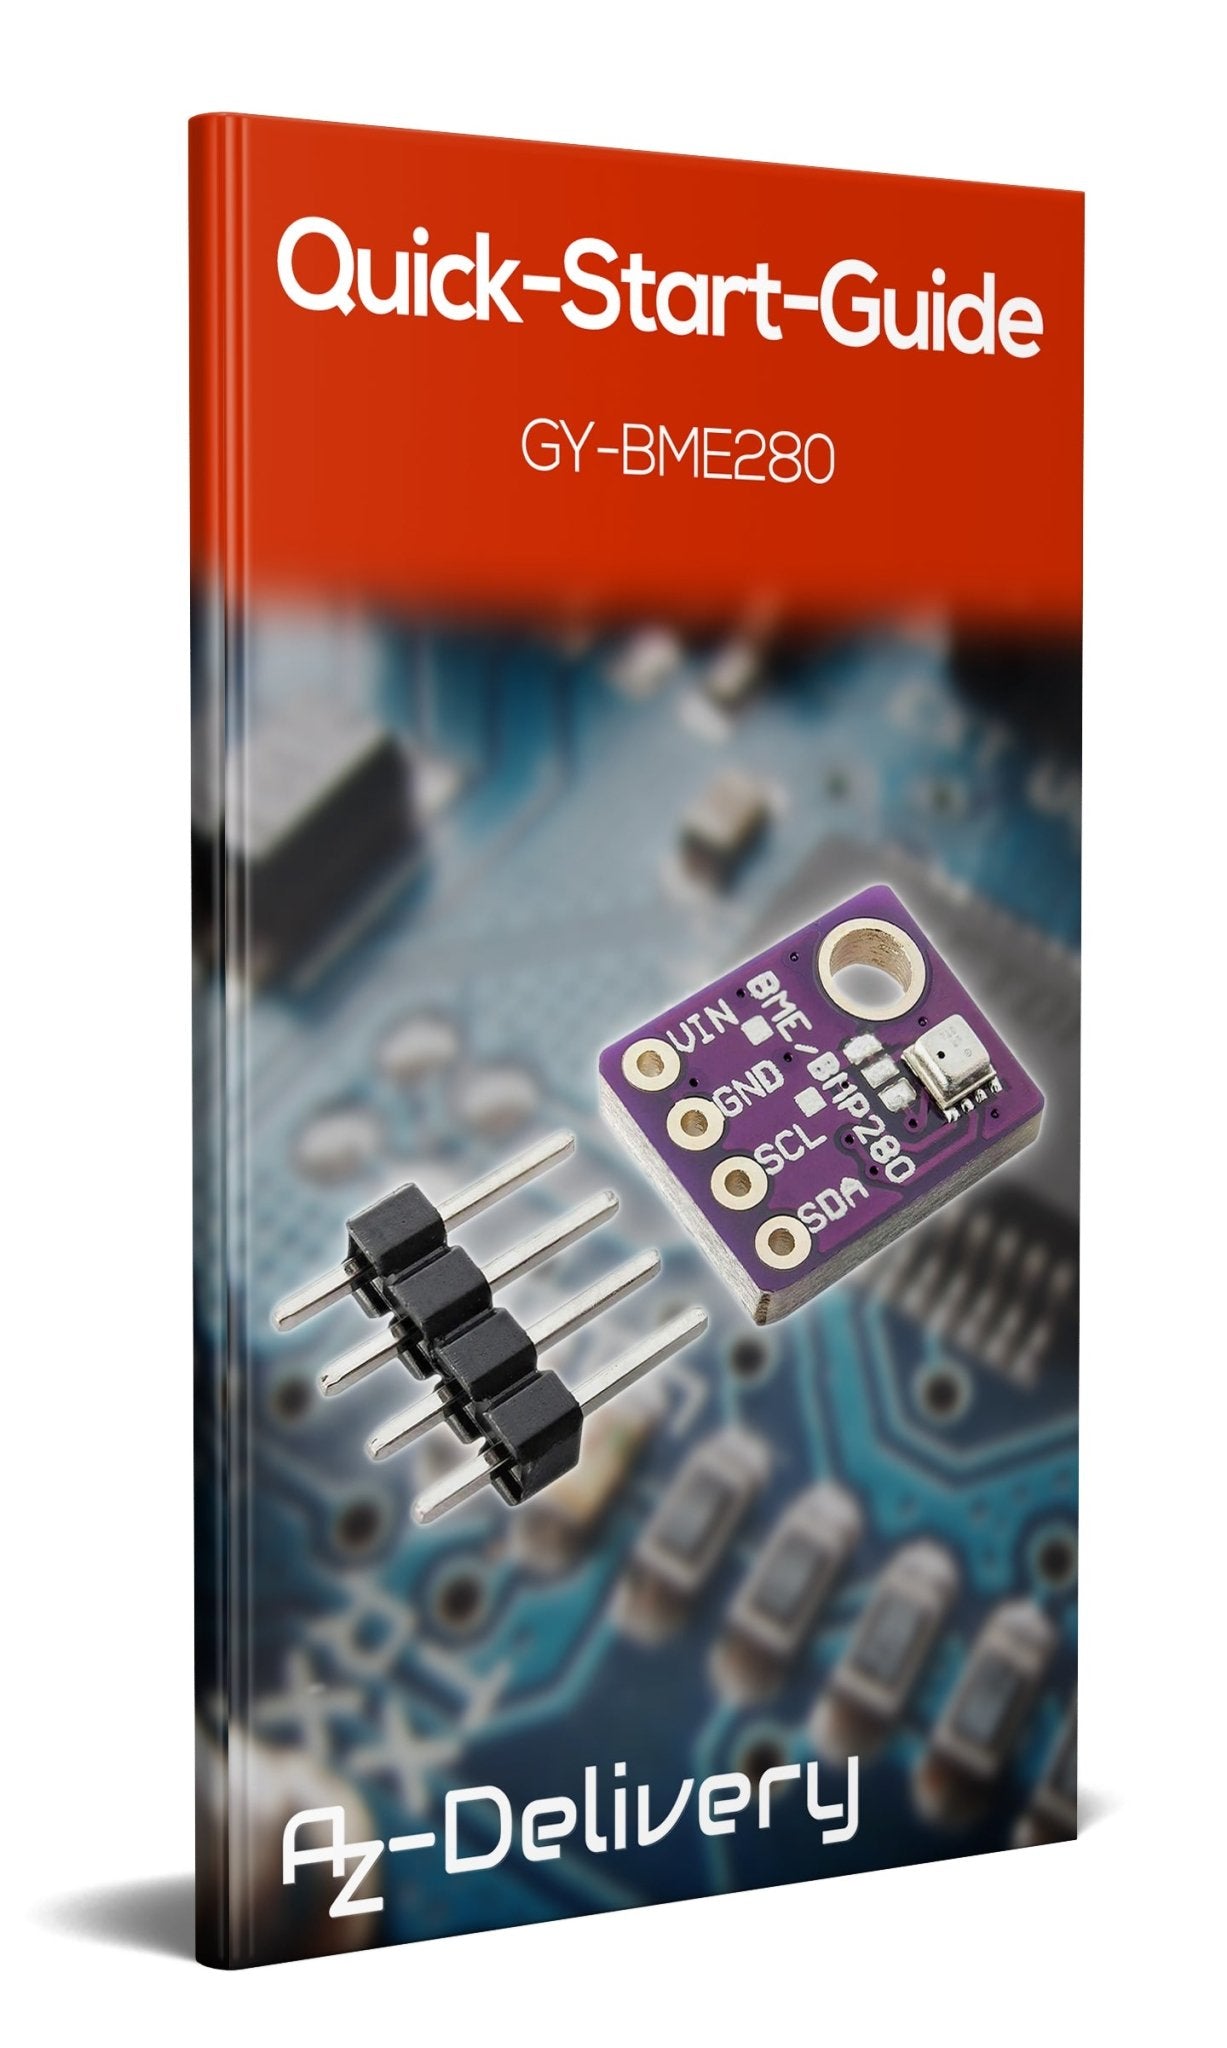 GY-BME280 Barometrischer Sensor für Temperatur, Luftfeuchtigkeit und Luftdruck - AZ-Delivery